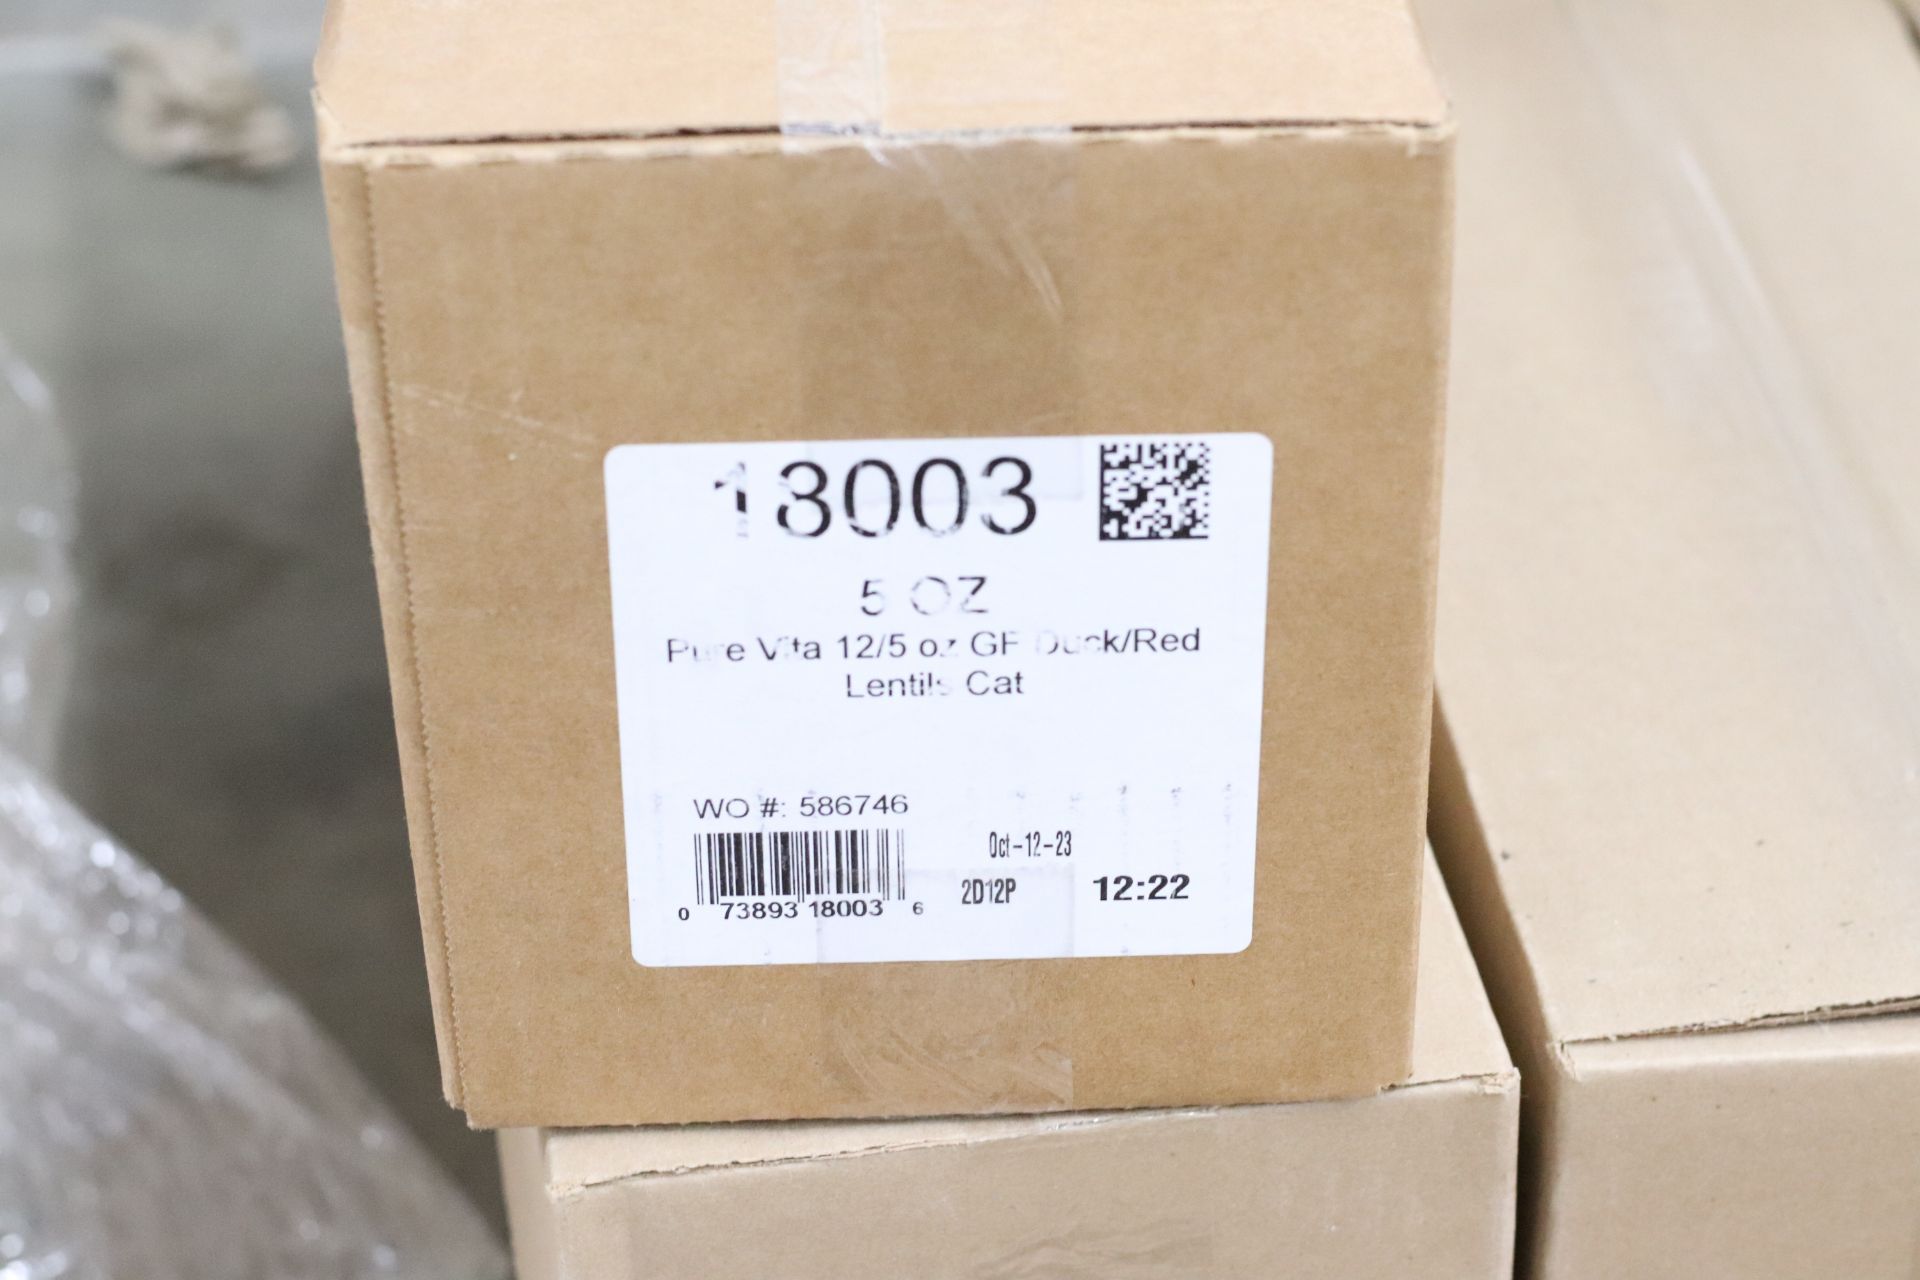 Nine boxes of PureVita cat food samples